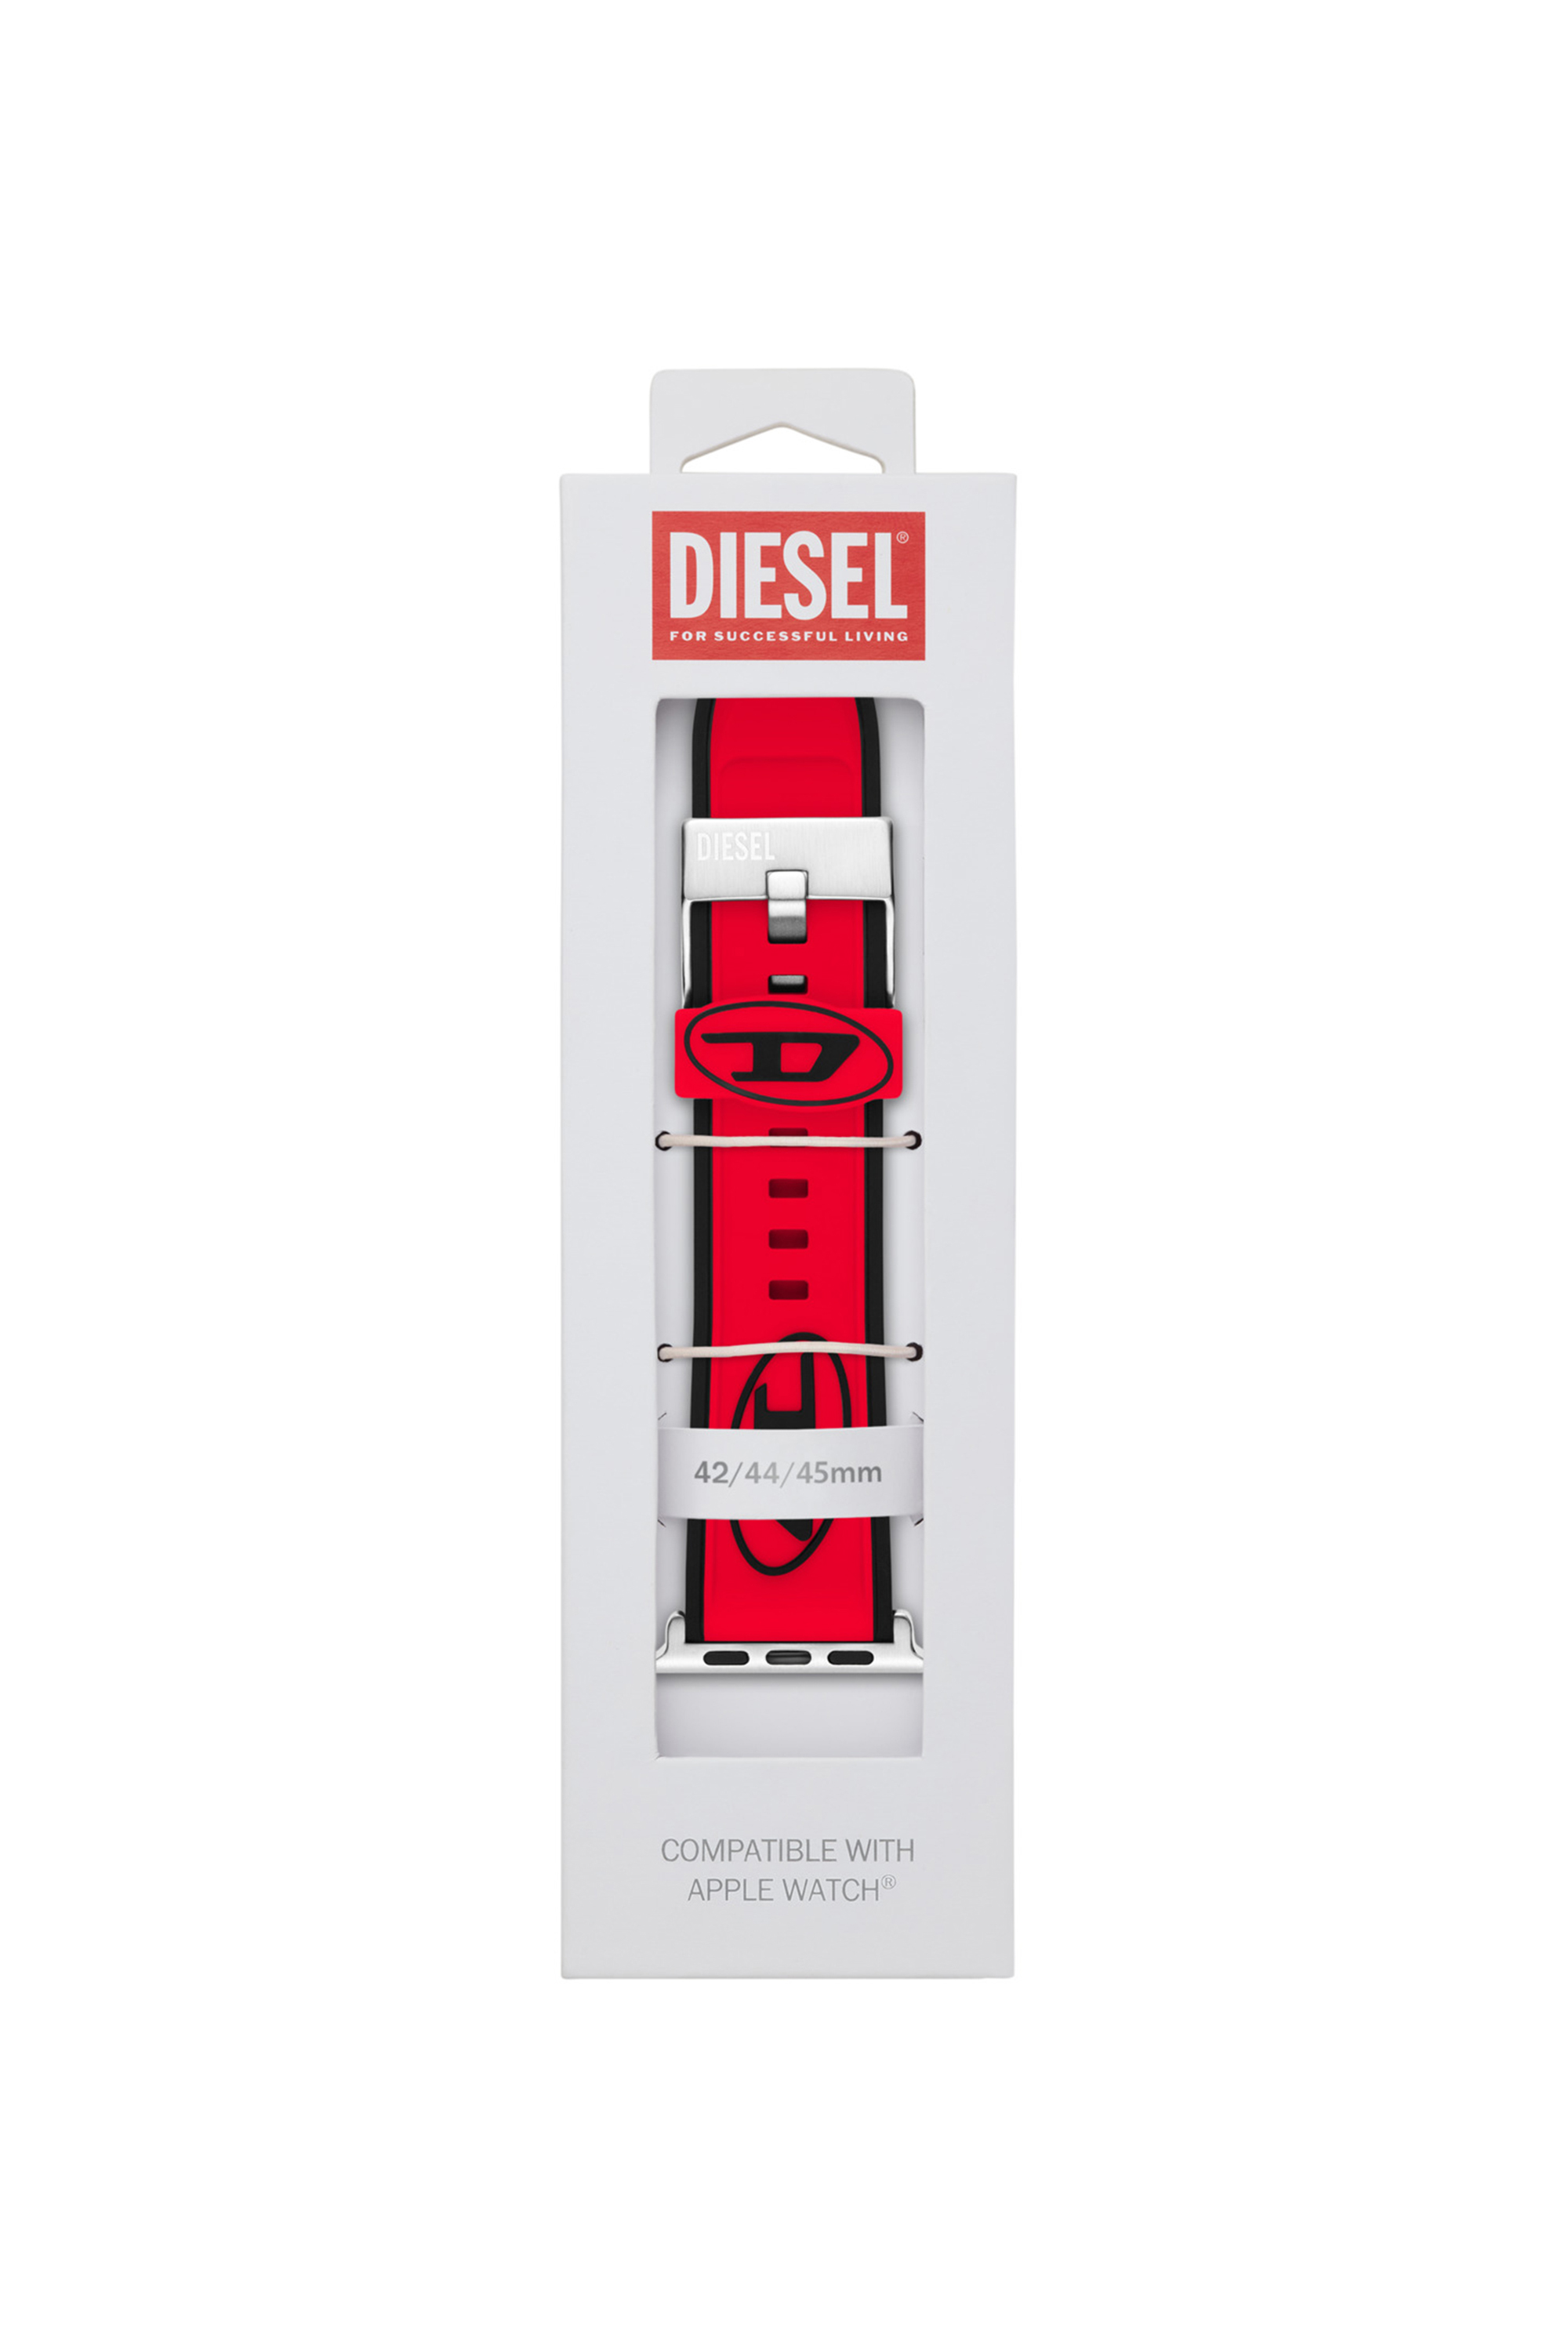 Diesel - DSS010, Red - Image 2